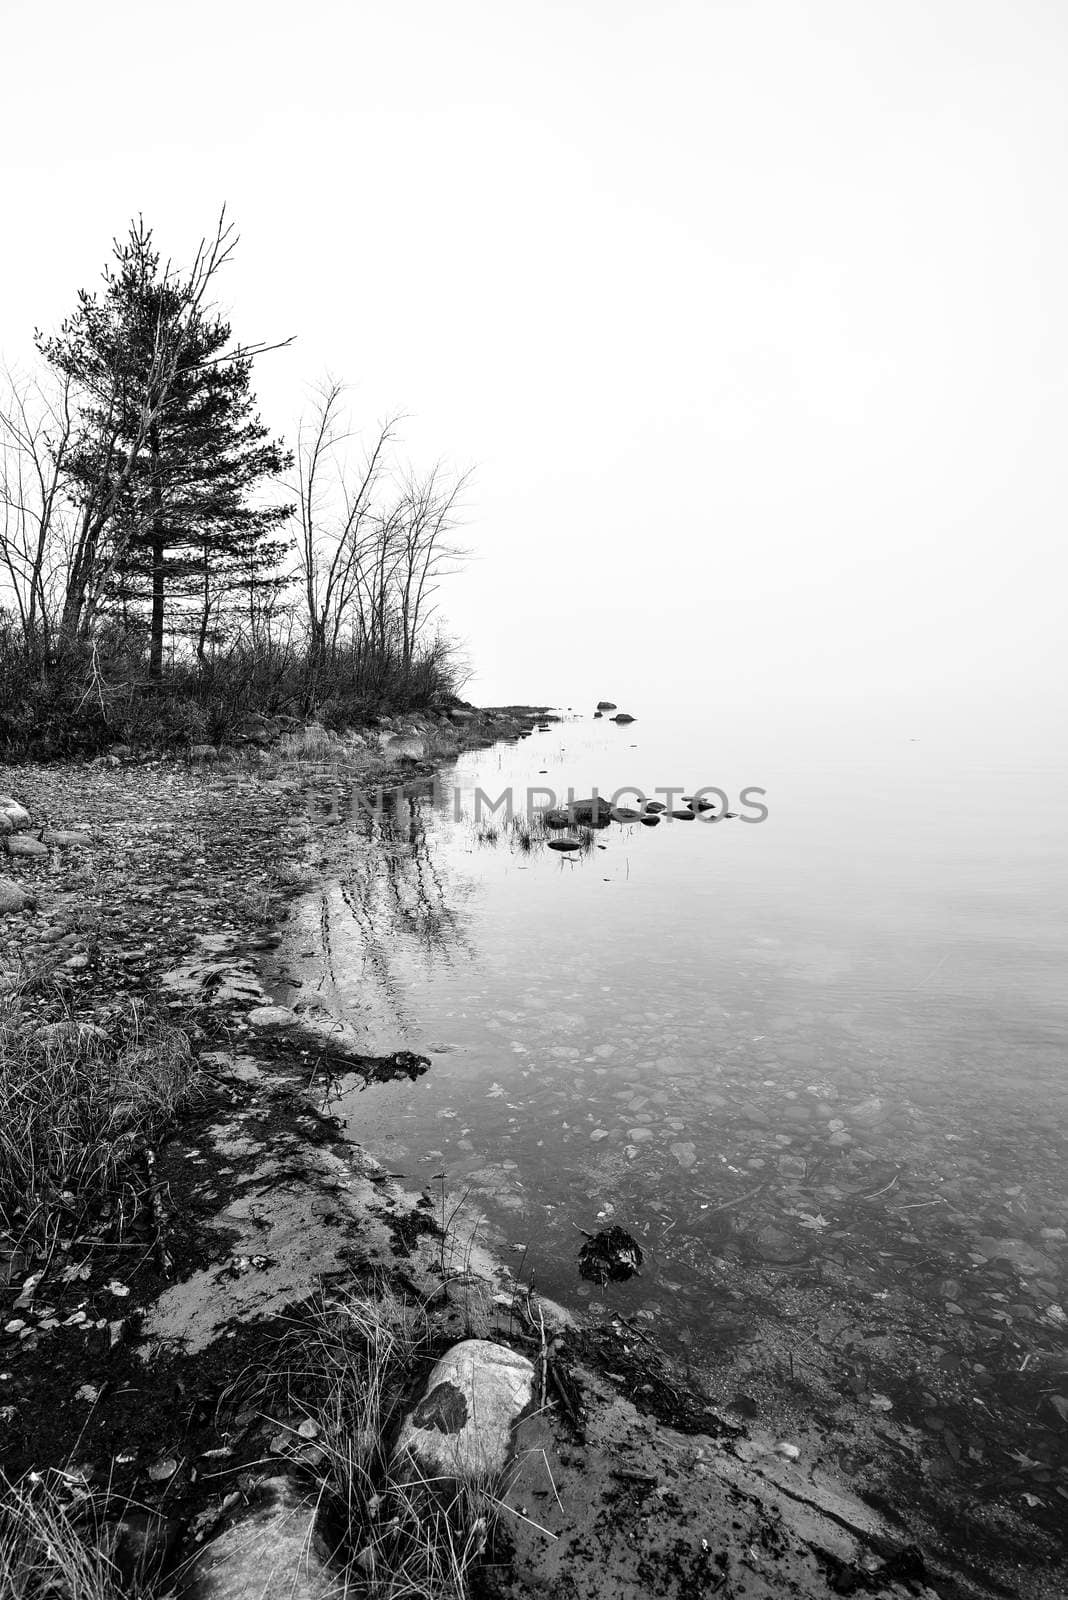 Ottawa River shoreline shrouded in dense fog in black and white. by valleyboi63